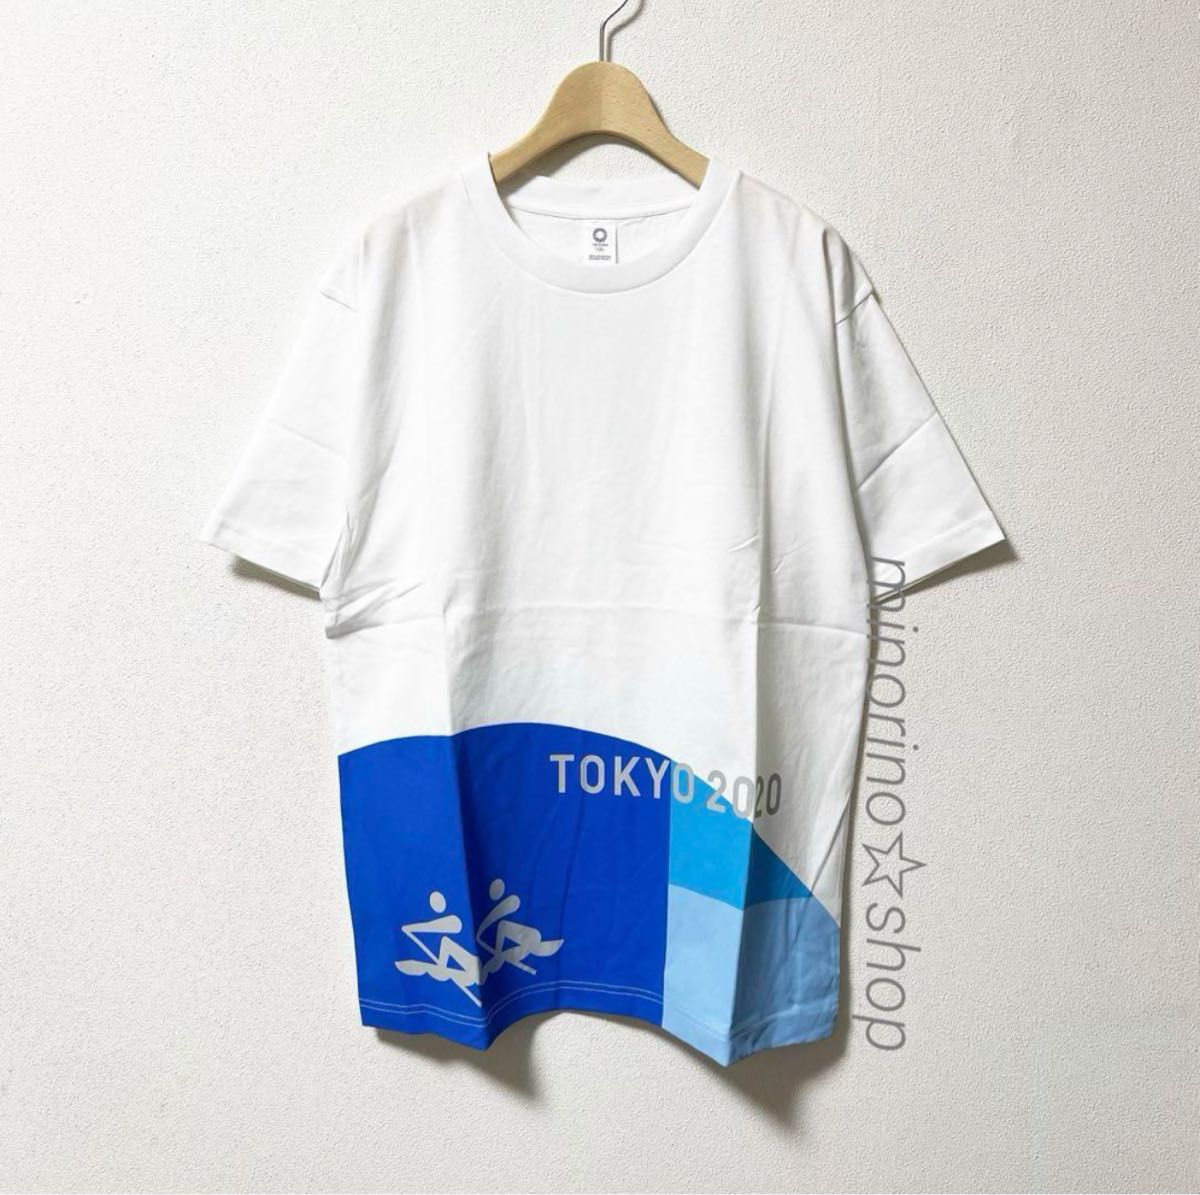 東京オリンピック 2020 Tシャツ ボート L 2枚セット